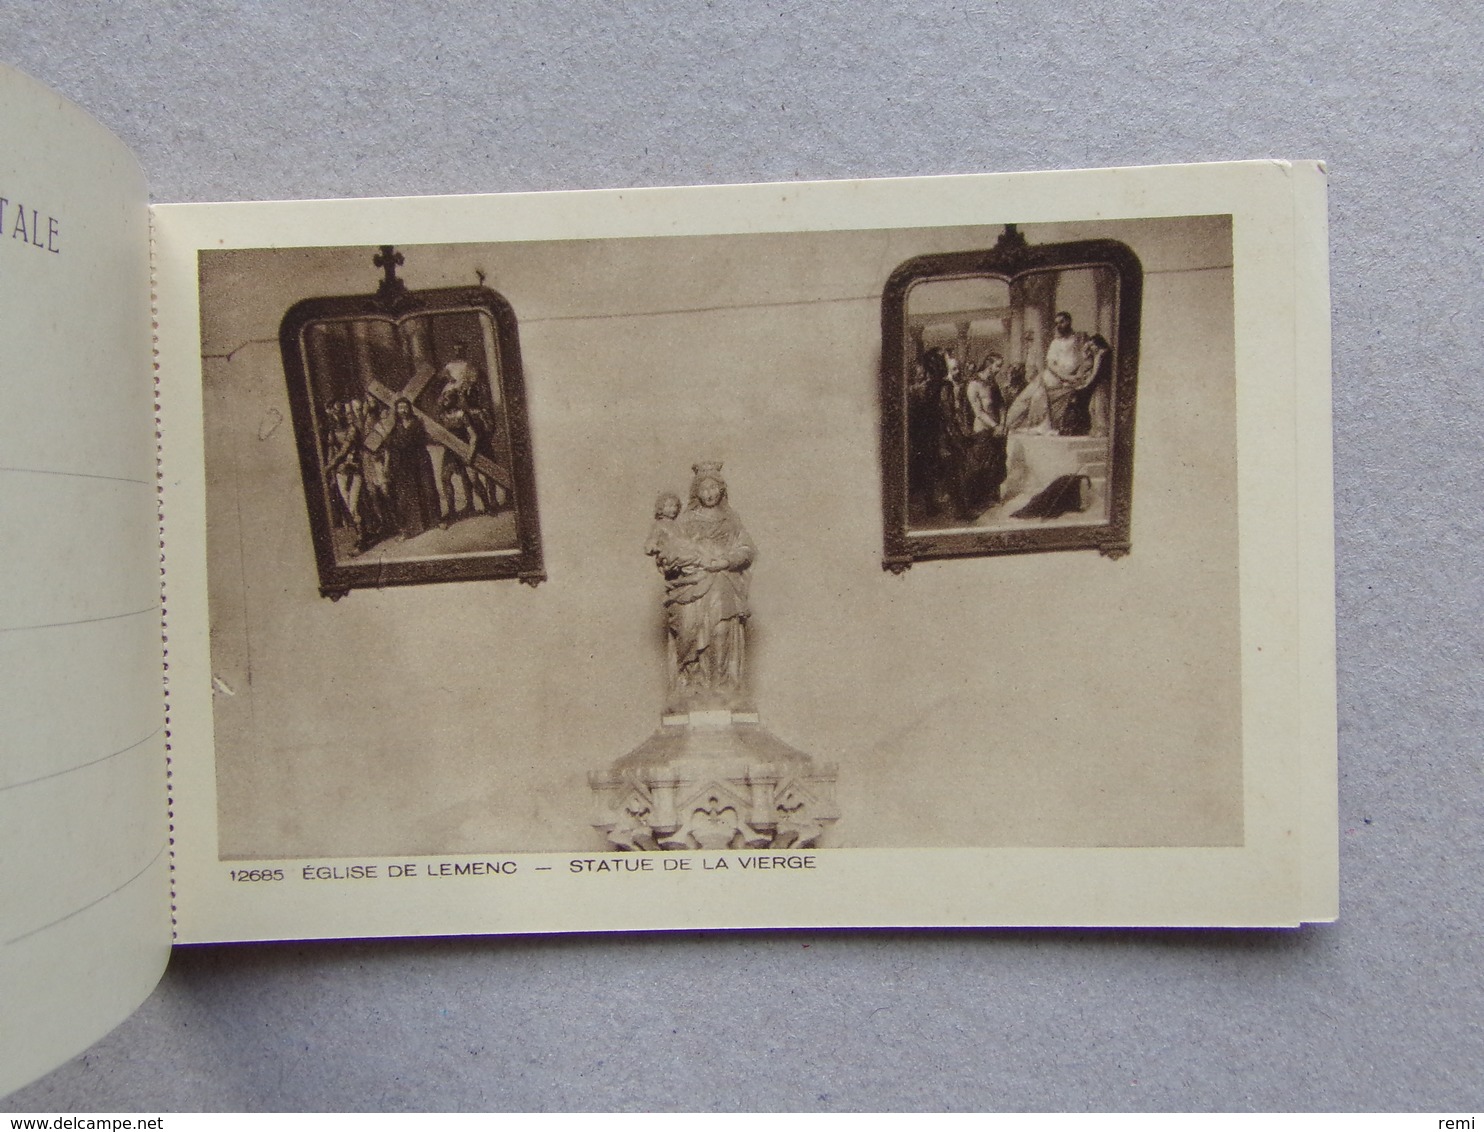 73 EGLISE de LEMENC CHAMBERY Album relié de 10 cartes postales neuves Parfait état éditions de Luxe BRAUN & Cie